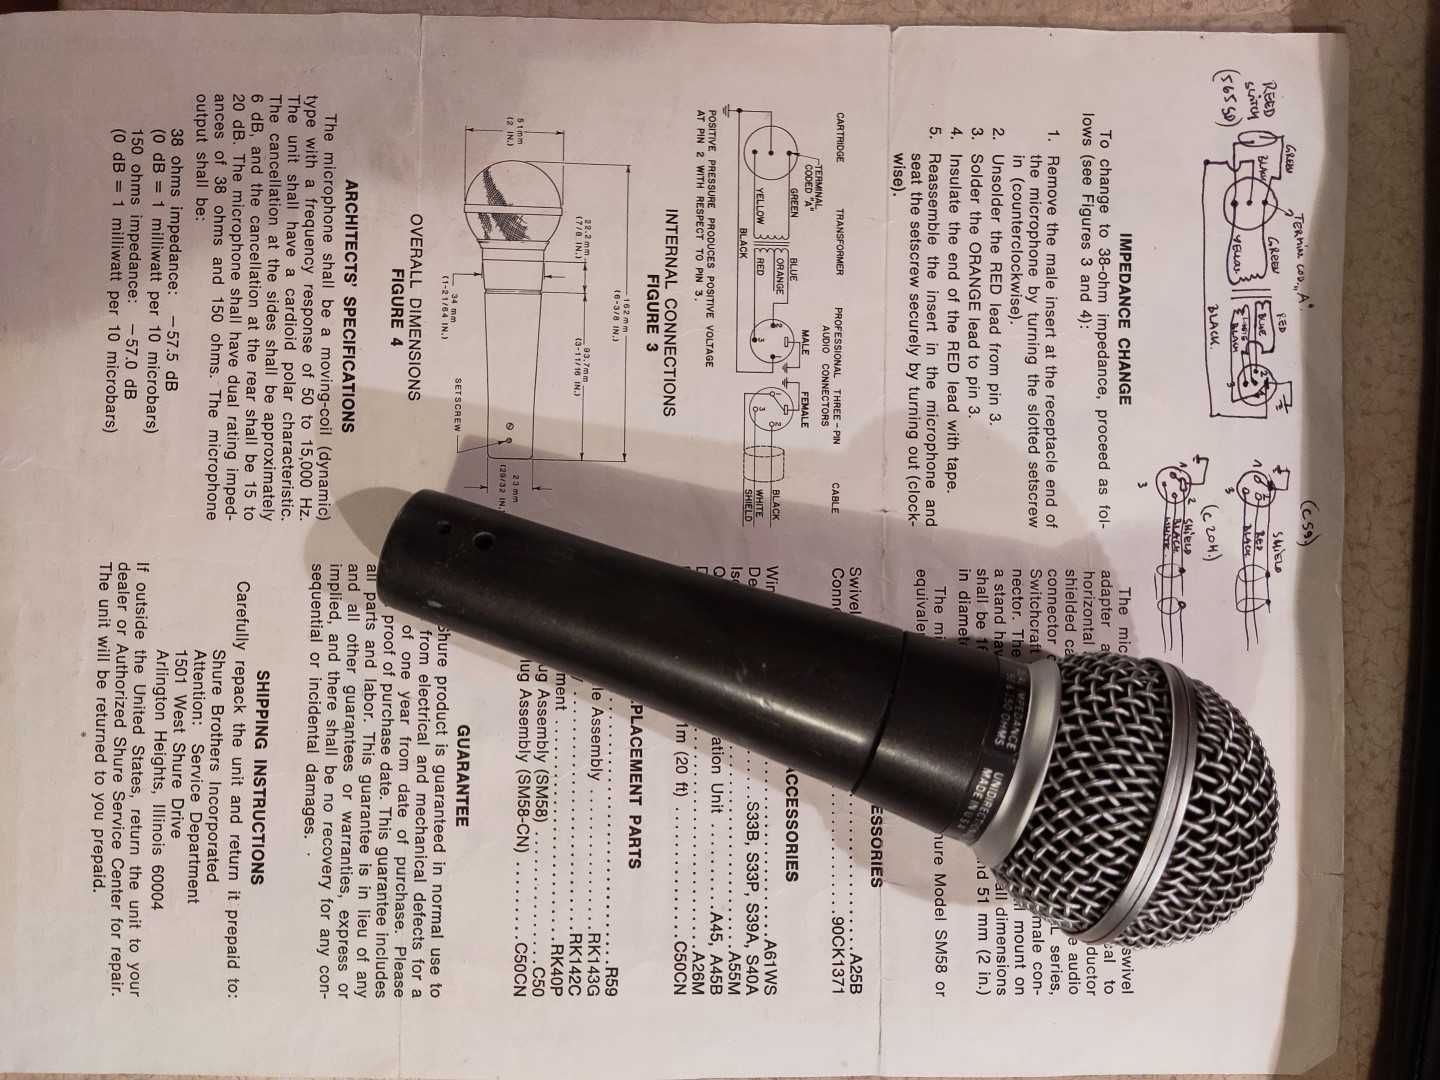 Mikrofon dynamiczny Shure SM58 Vintage. Made in USA, sprawny